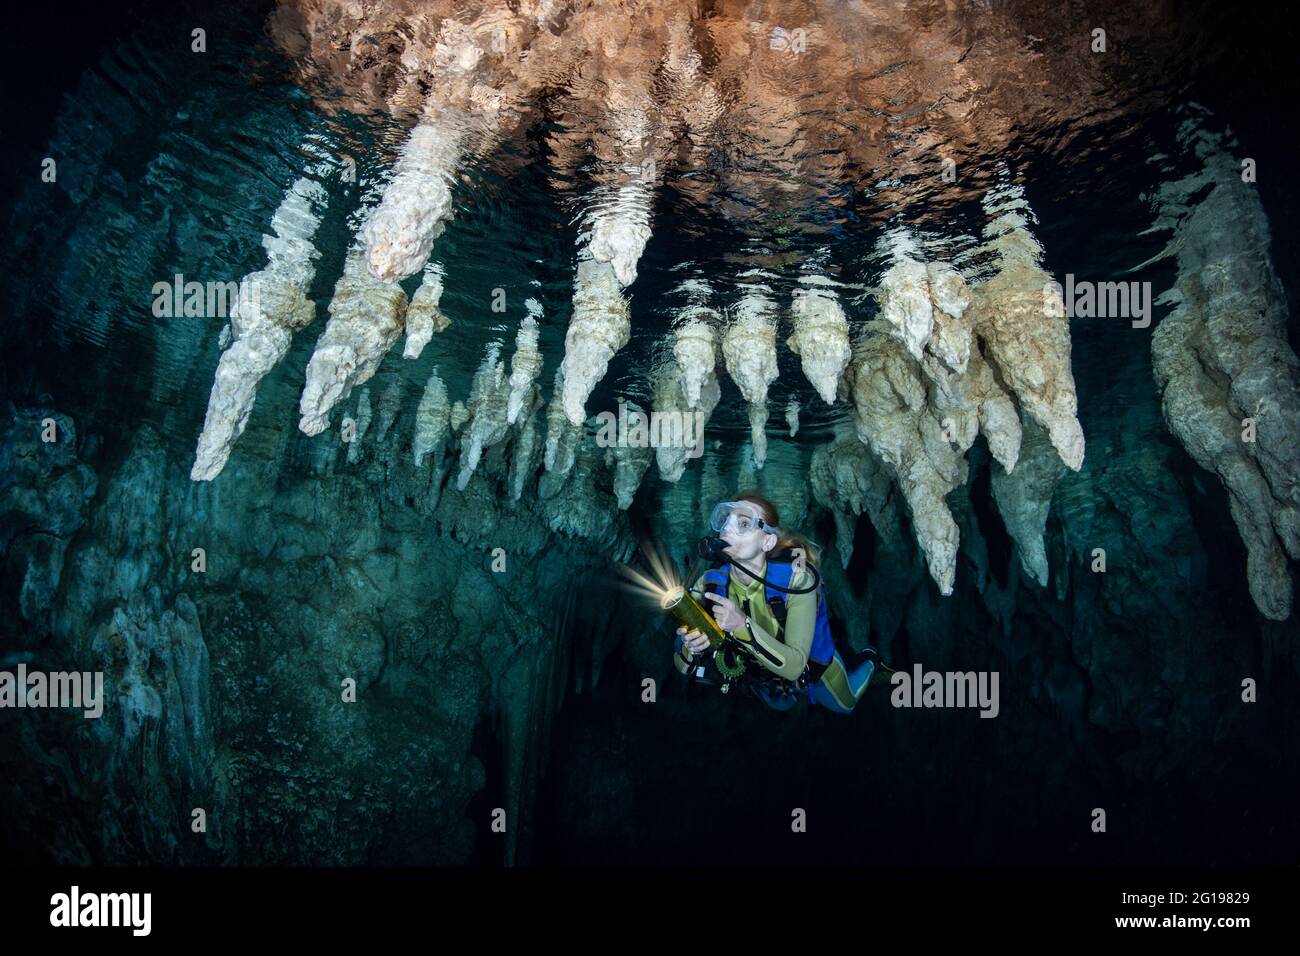 Scuba Diver in Chandelier Dripstone Cave, Micronesia, Palau Stock Photo